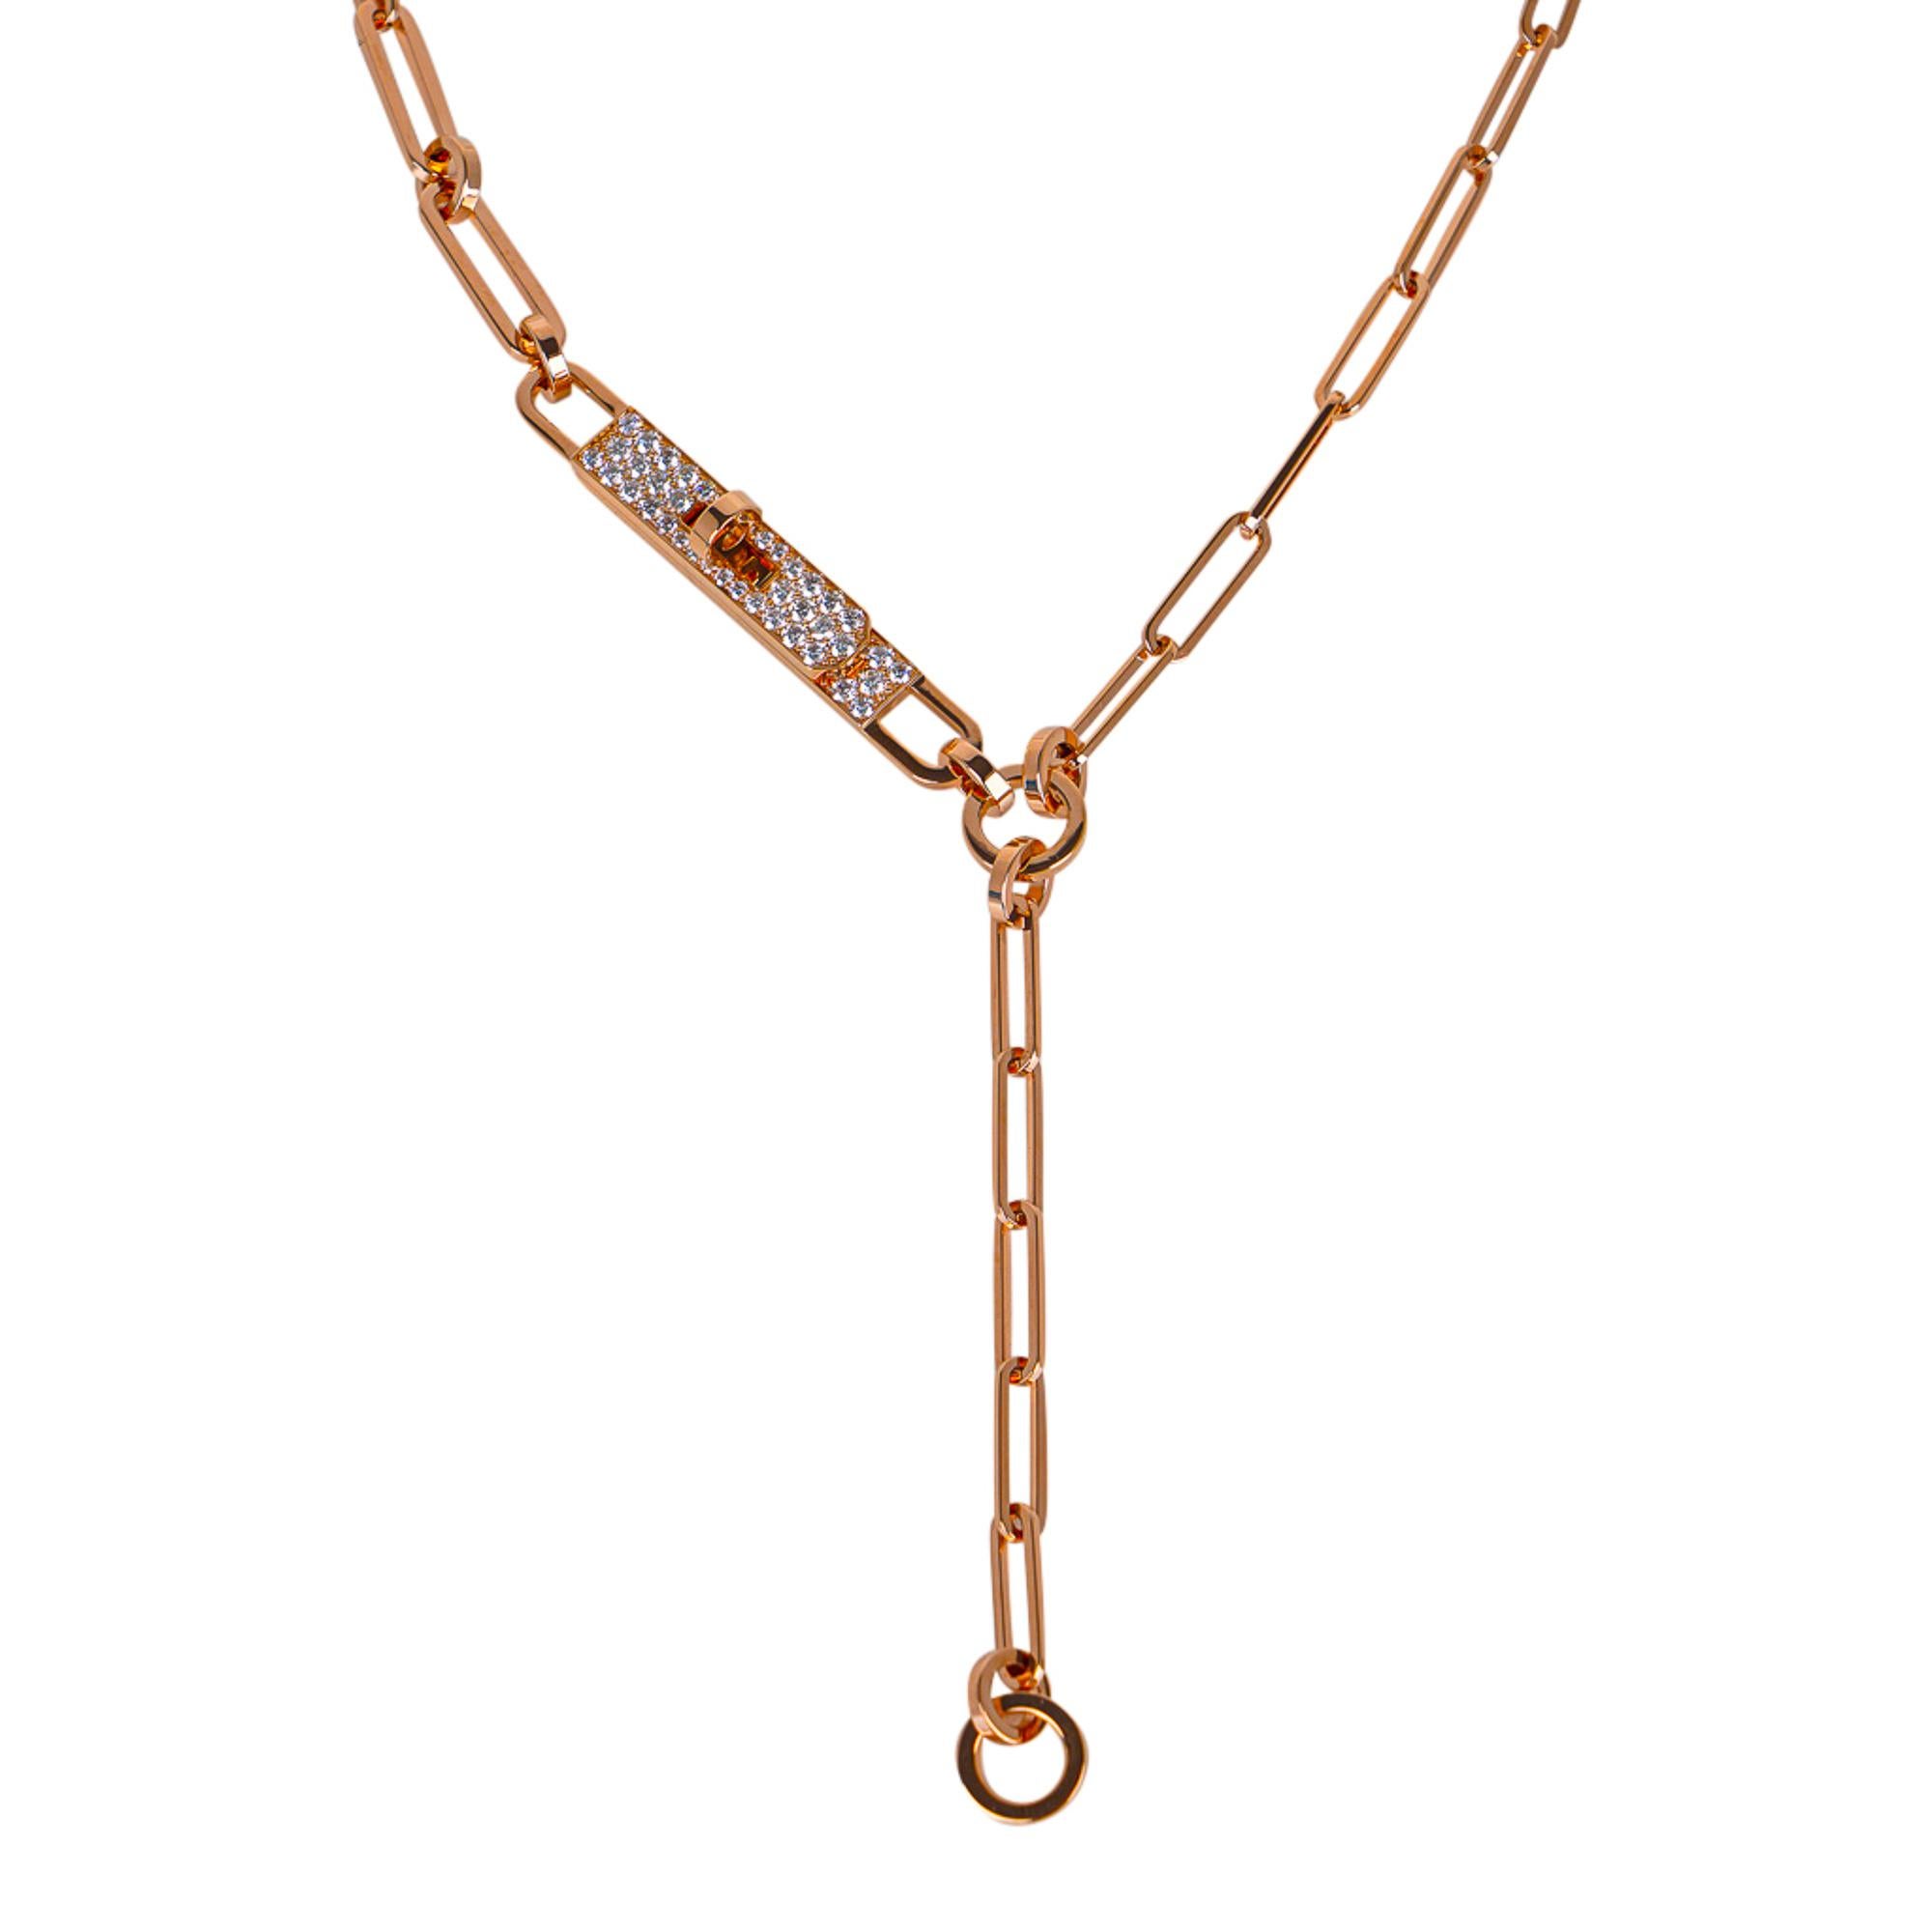 Mightychic bietet eine Hermes Kelly Chaine Lariat Halskette an.
Das kleine Modell ist aus 18 Karat Roségold gefertigt und mit einer diamantenen Kelly Lock-Schließe versehen.
Besetzt mit 41 Diamanten mit einem Gesamtgewicht von 0,62 Karat.
Die